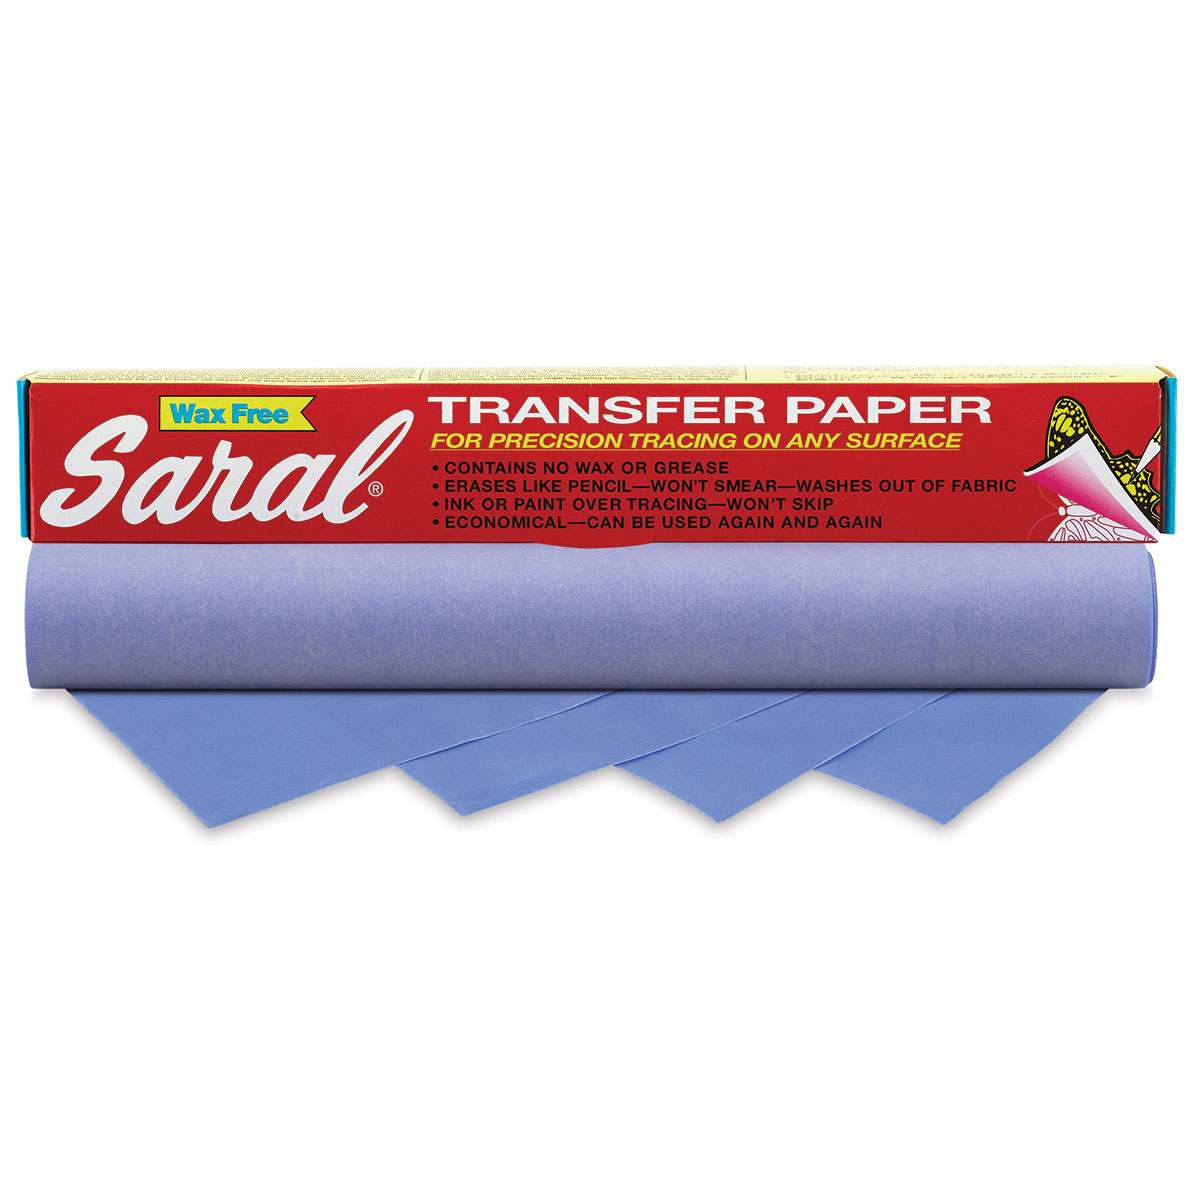 Saral Wax Free Transfer Paper Rolls - Artsavingsclub